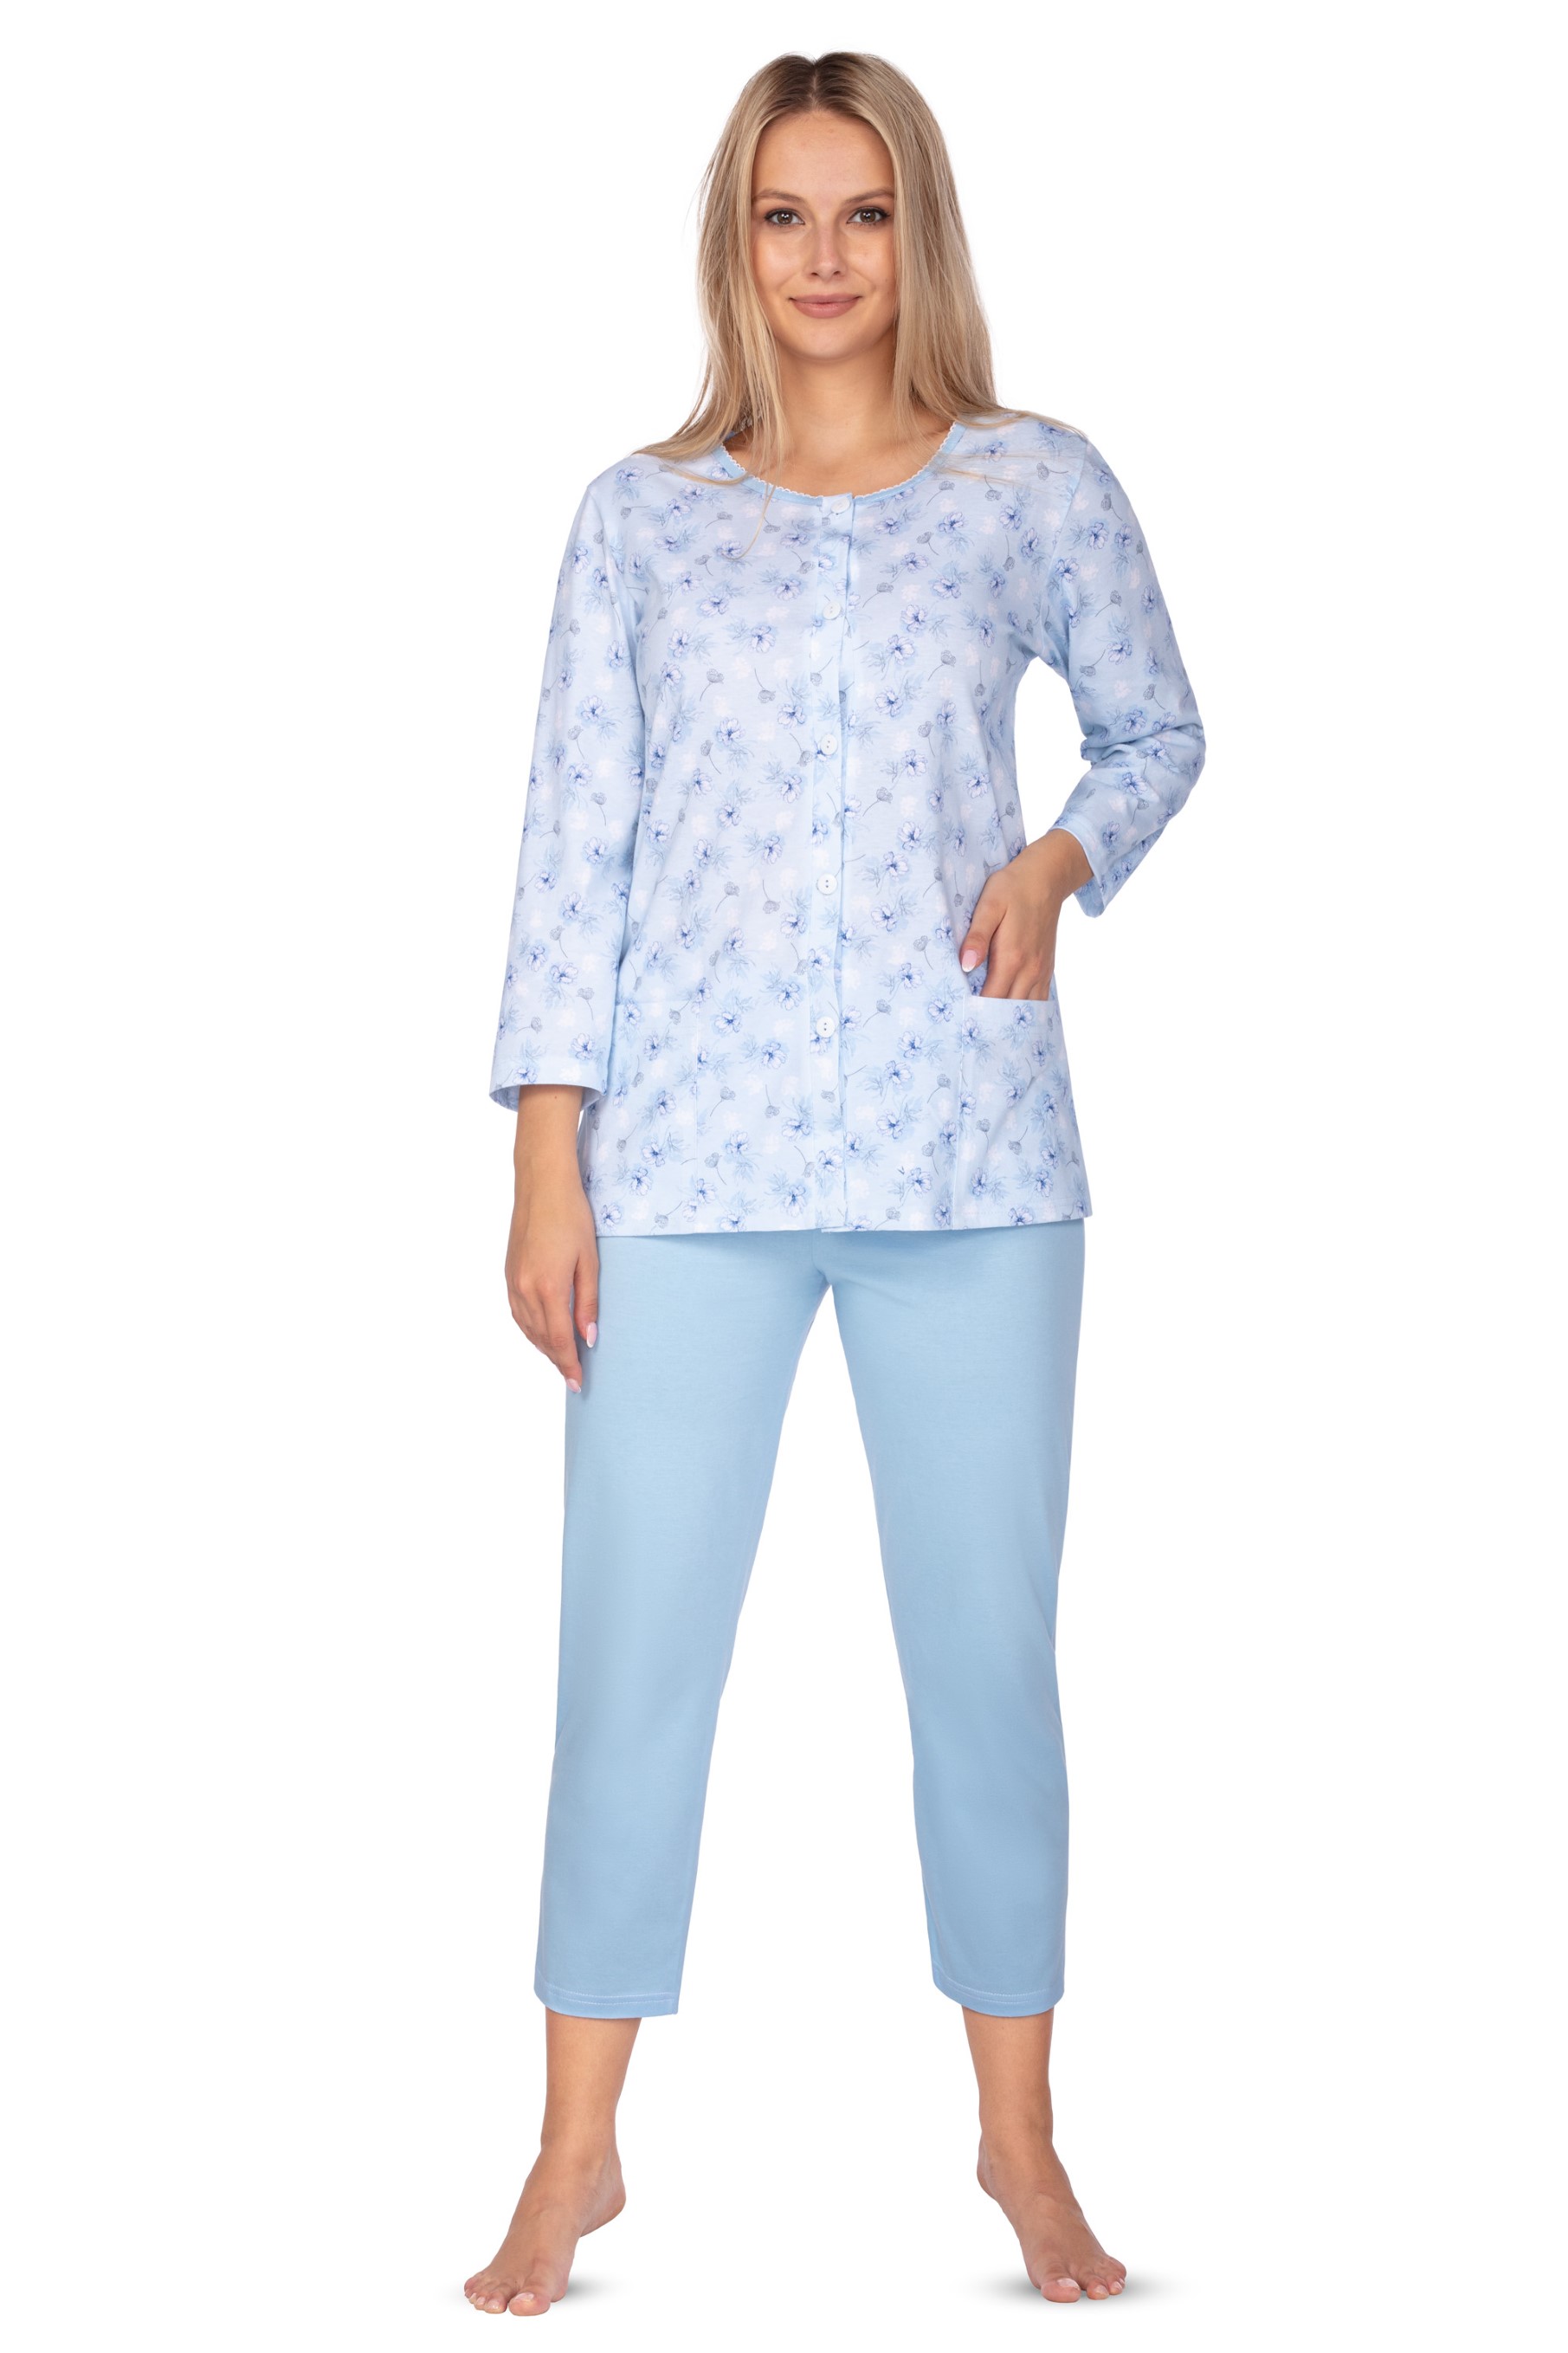 Regina 644 modré 3/4 dámské pyžamo Barva: modrá, Velikost: 2XL